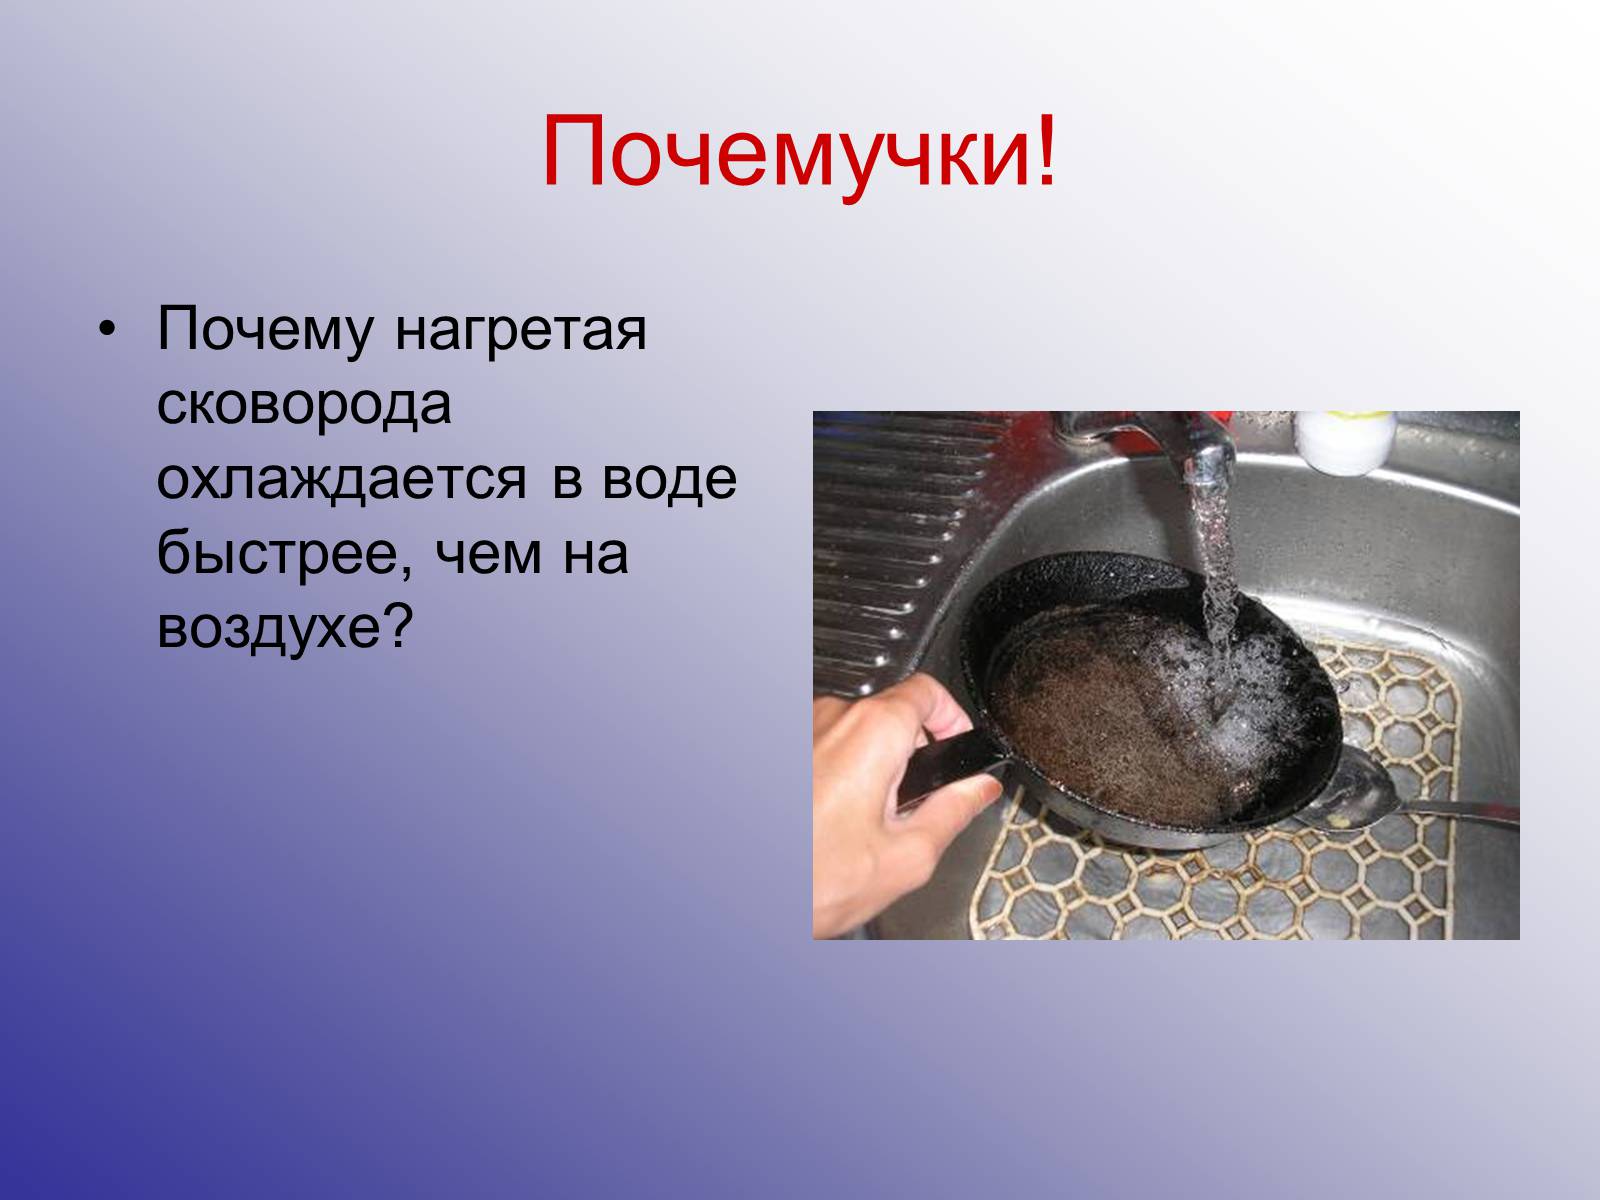 Почему вода остывает. Вода на нагретой сковородке. Почему нагретые детали охлаждаются в воде быстрее чем на воздухе. Теплообмен виды сковородка. Почему нагретая сковорода в воде быстрее охлаждается.